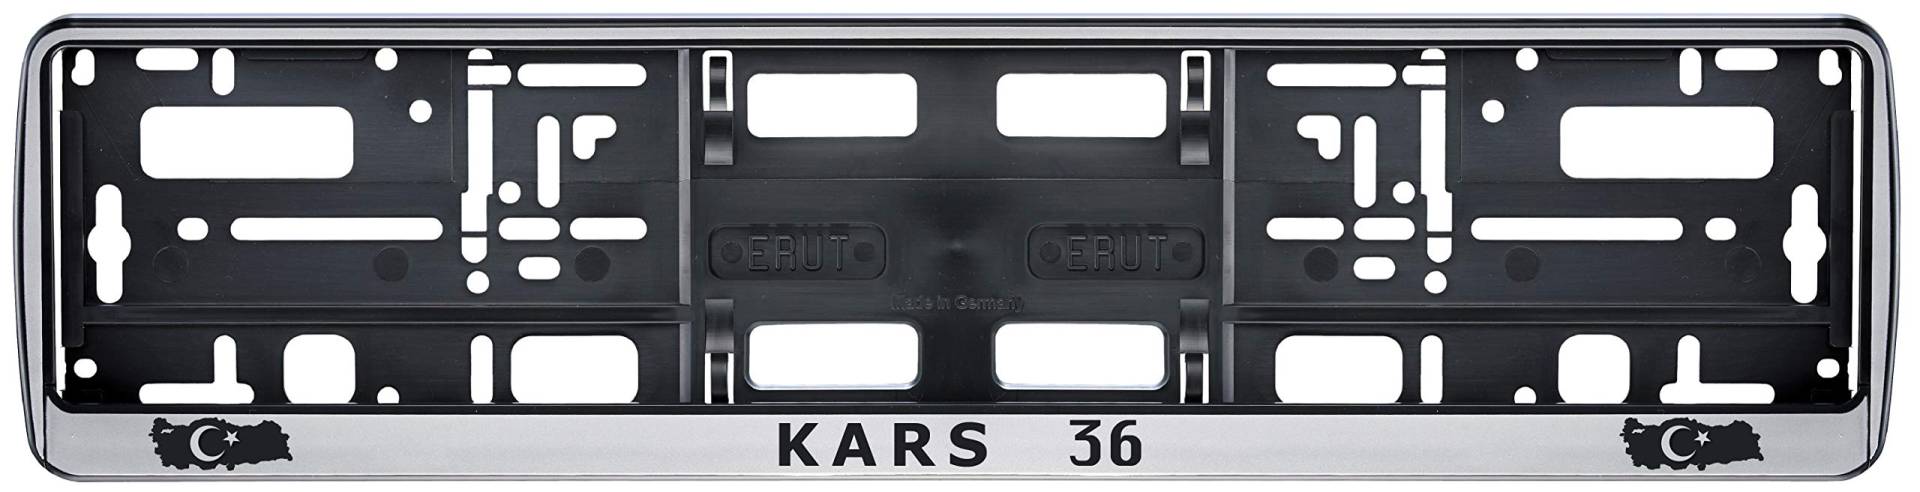 Auto Kennzeichenhalter in der Farbe Silber/Schwarz Nummernschildhalterung Auto, Nummernschildhalter Türkei Flagge 36 Kars 2 Stück von Aina